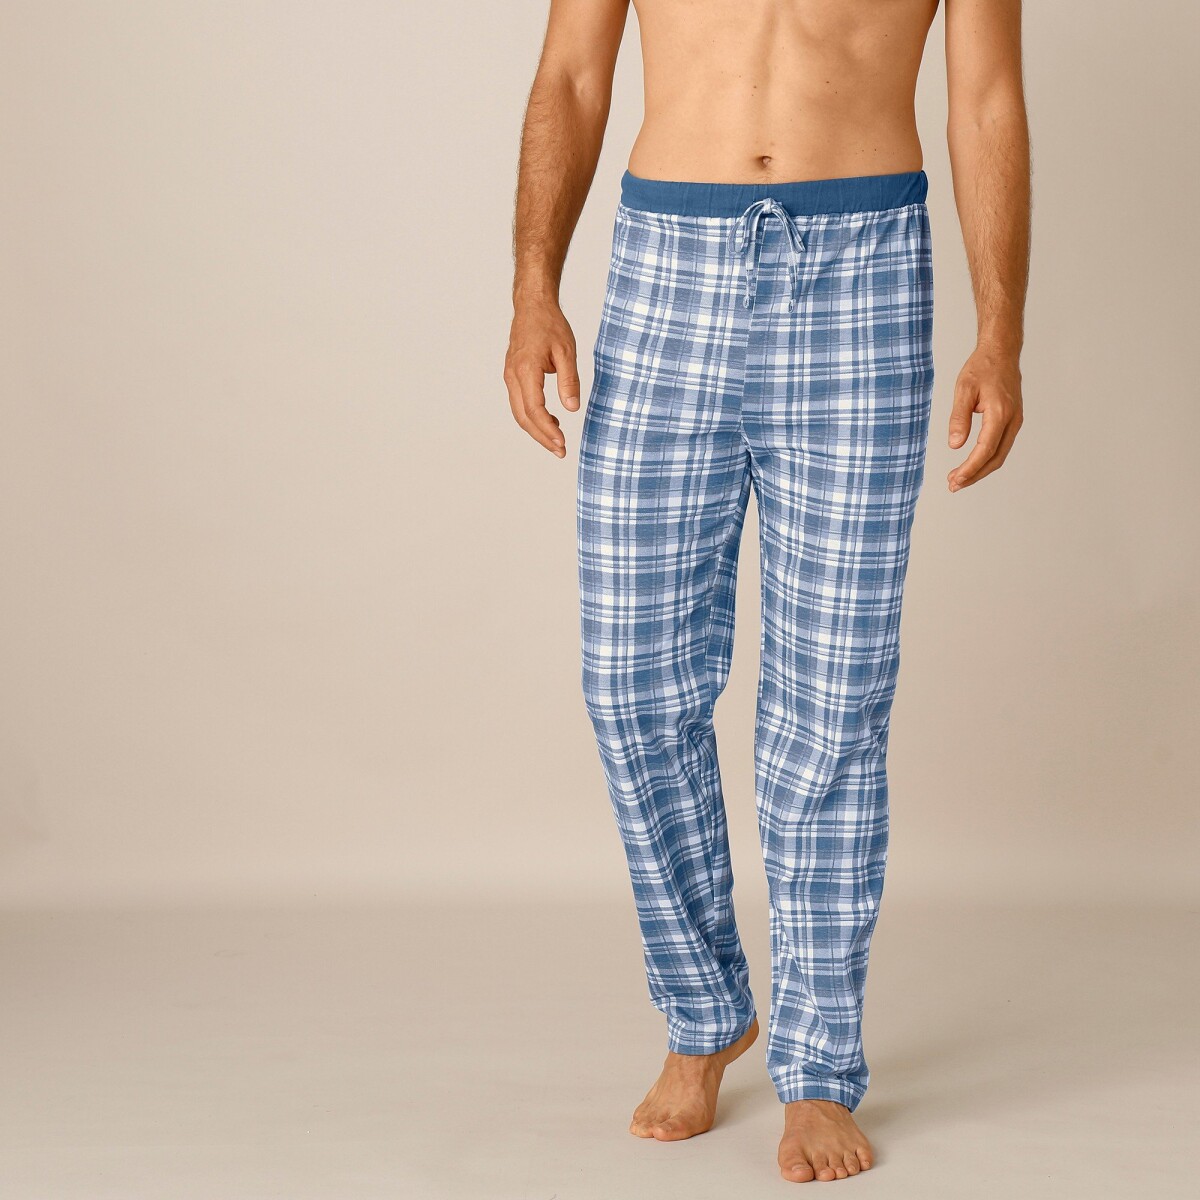 Blancheporte Sada 2 rovných pyžamových kalhot kostka modrášedá 3638